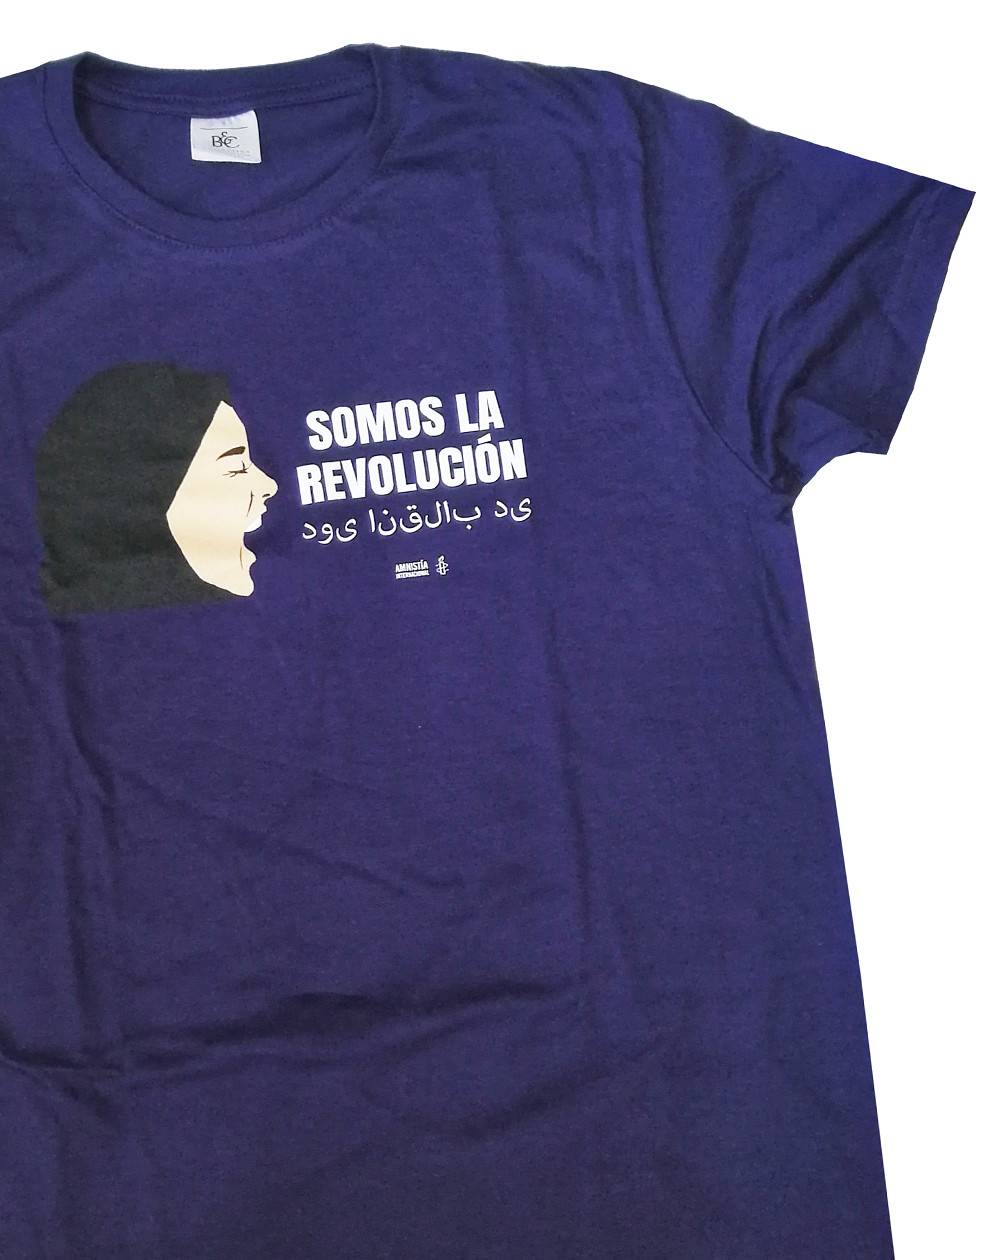 Camiseta feminista mujeres afganas unisex